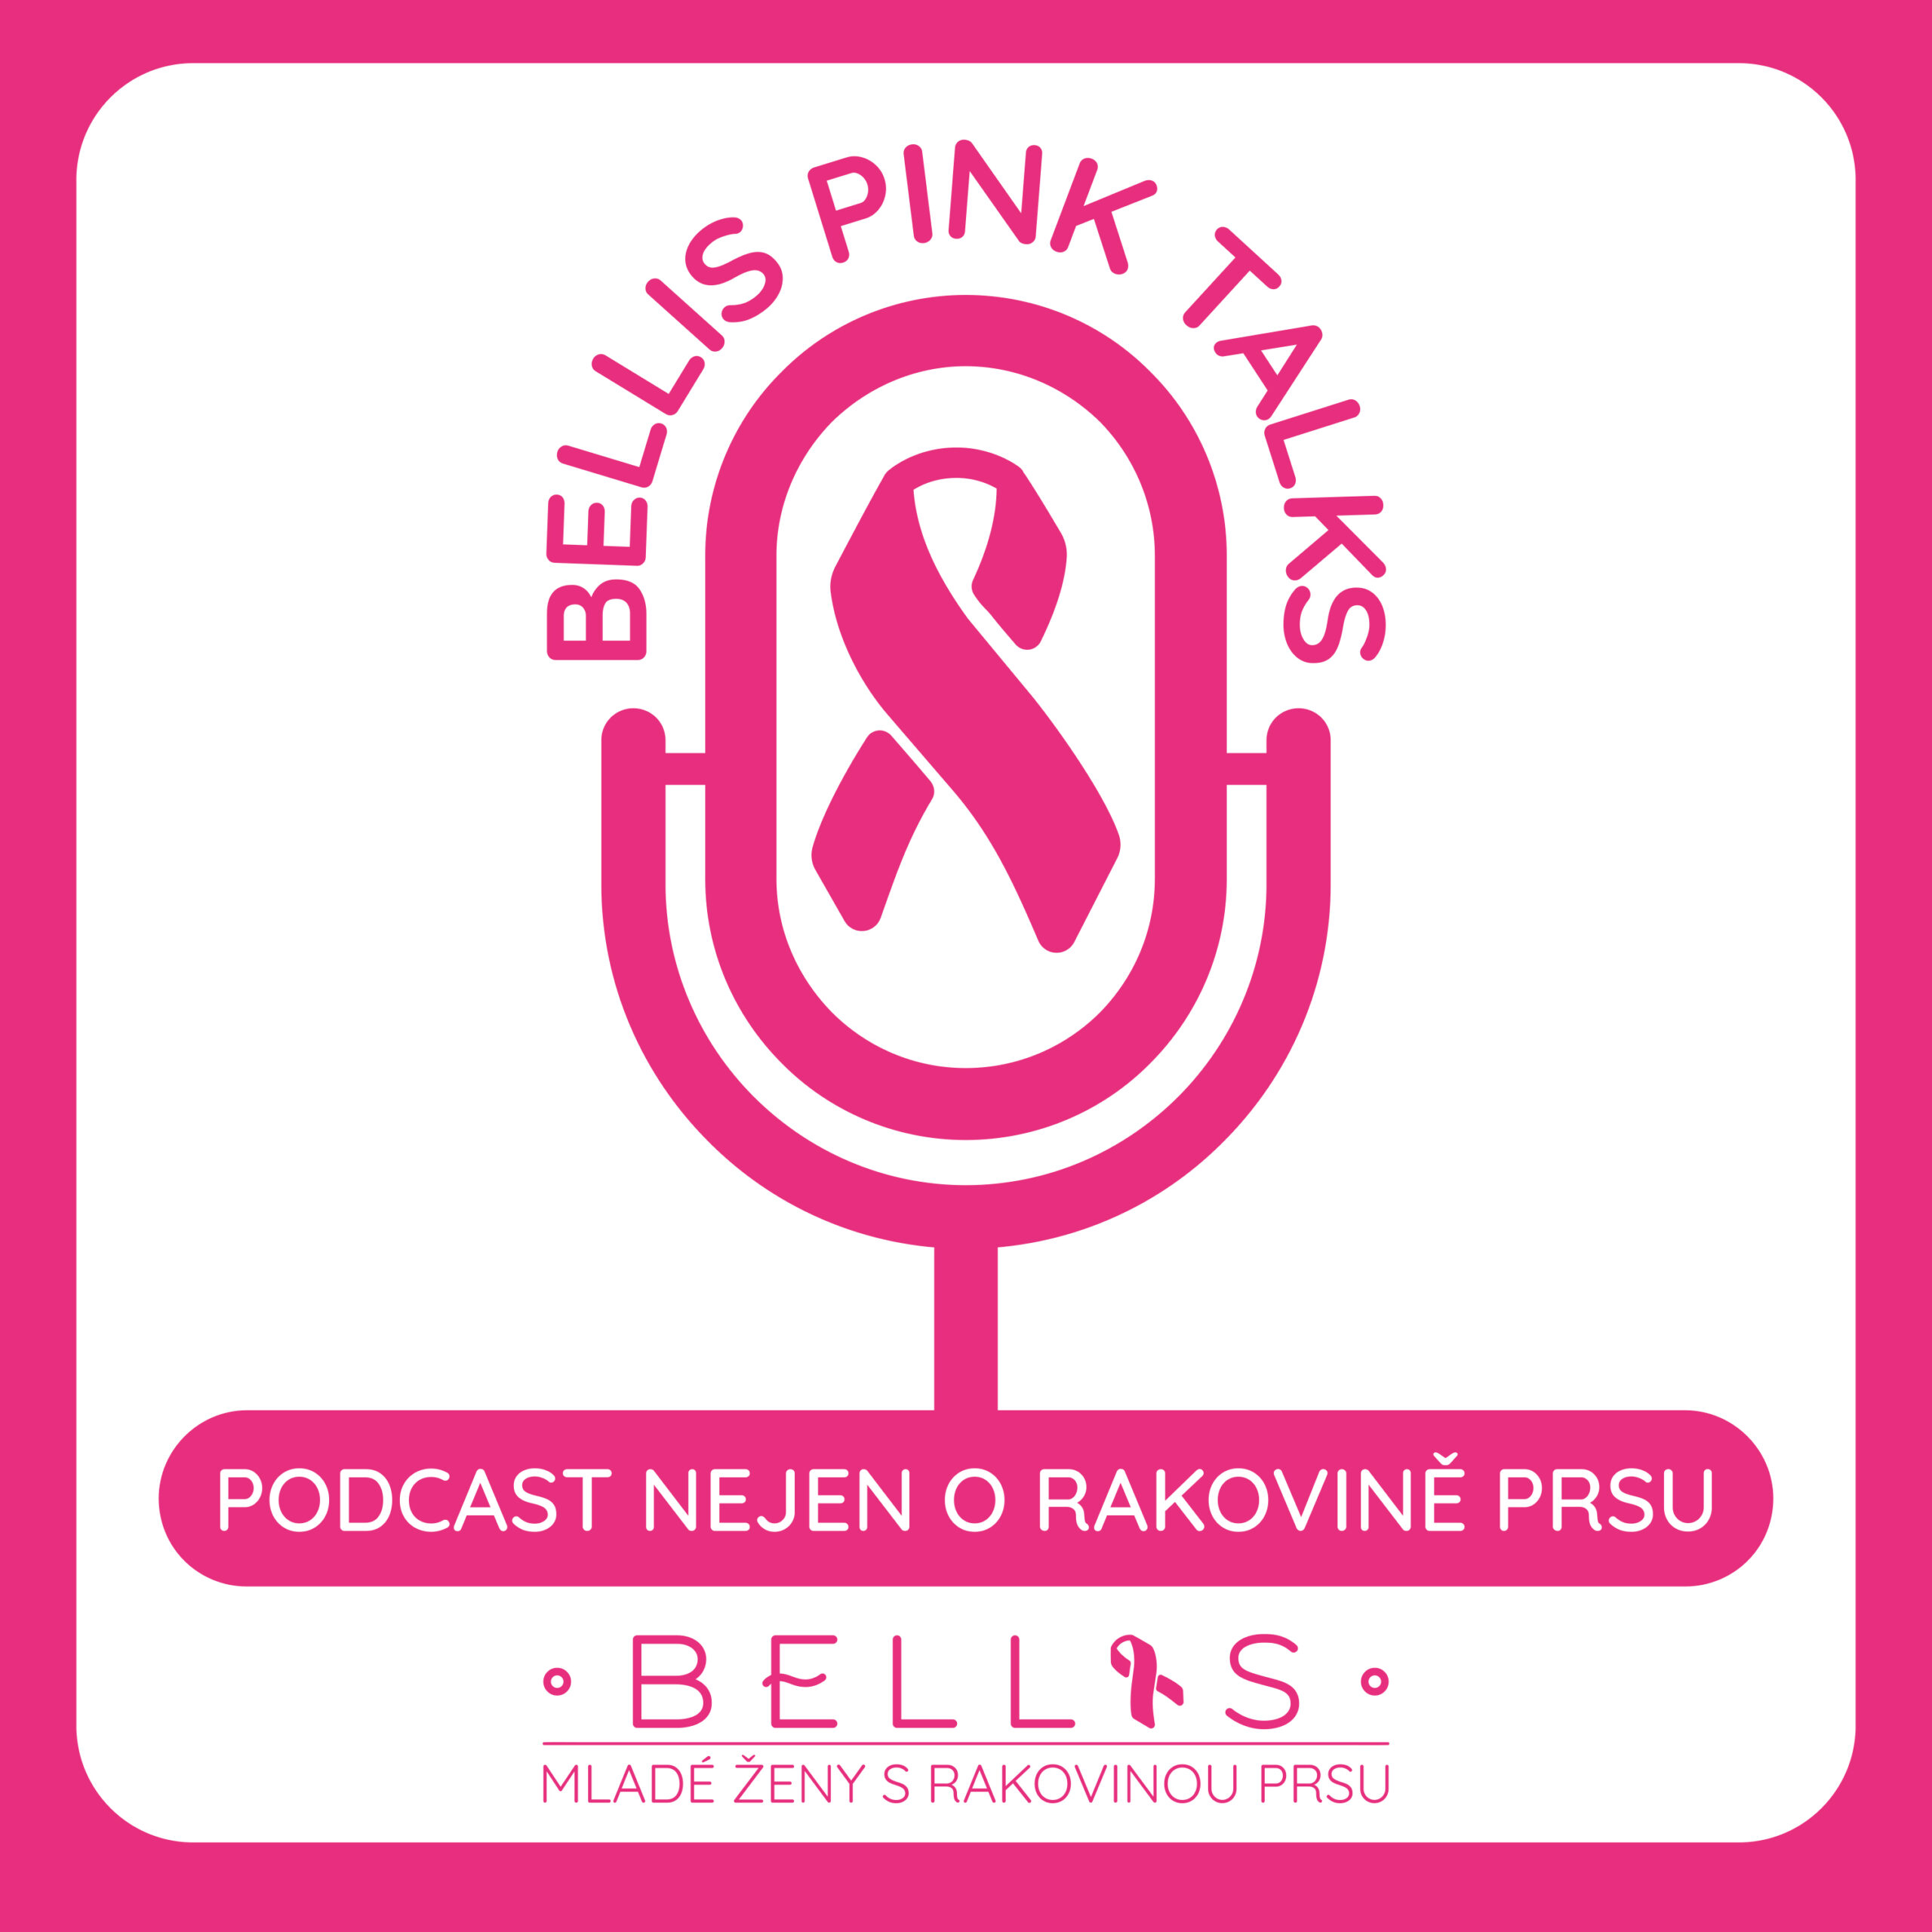 PODCAST: BELLIS PINK TALKS rozhovory nejen o rakovině prsu